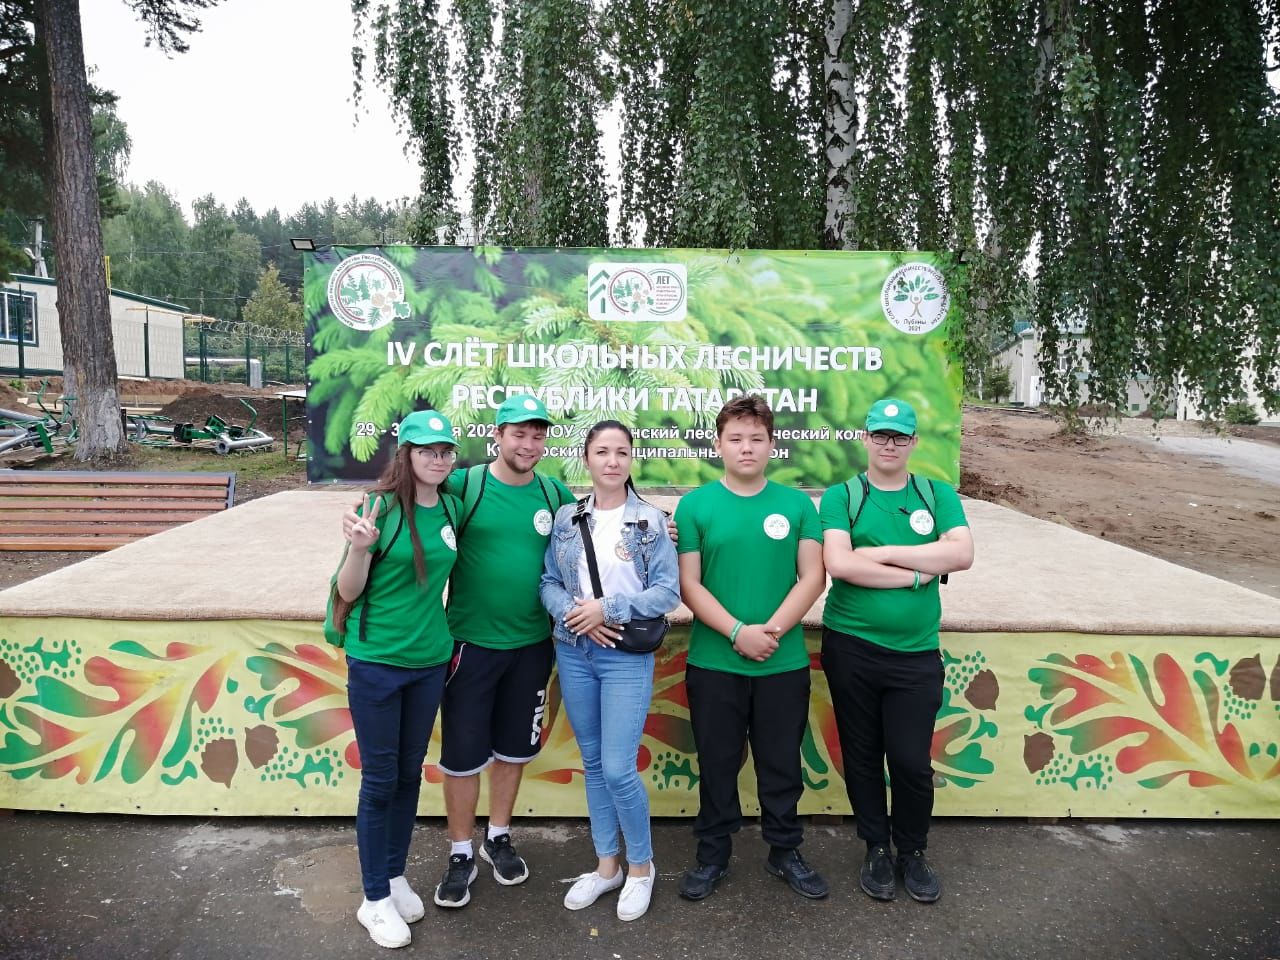 Активисты Спасского района приняли участие в IV слёте школьных лесничеств Республики Татарстан